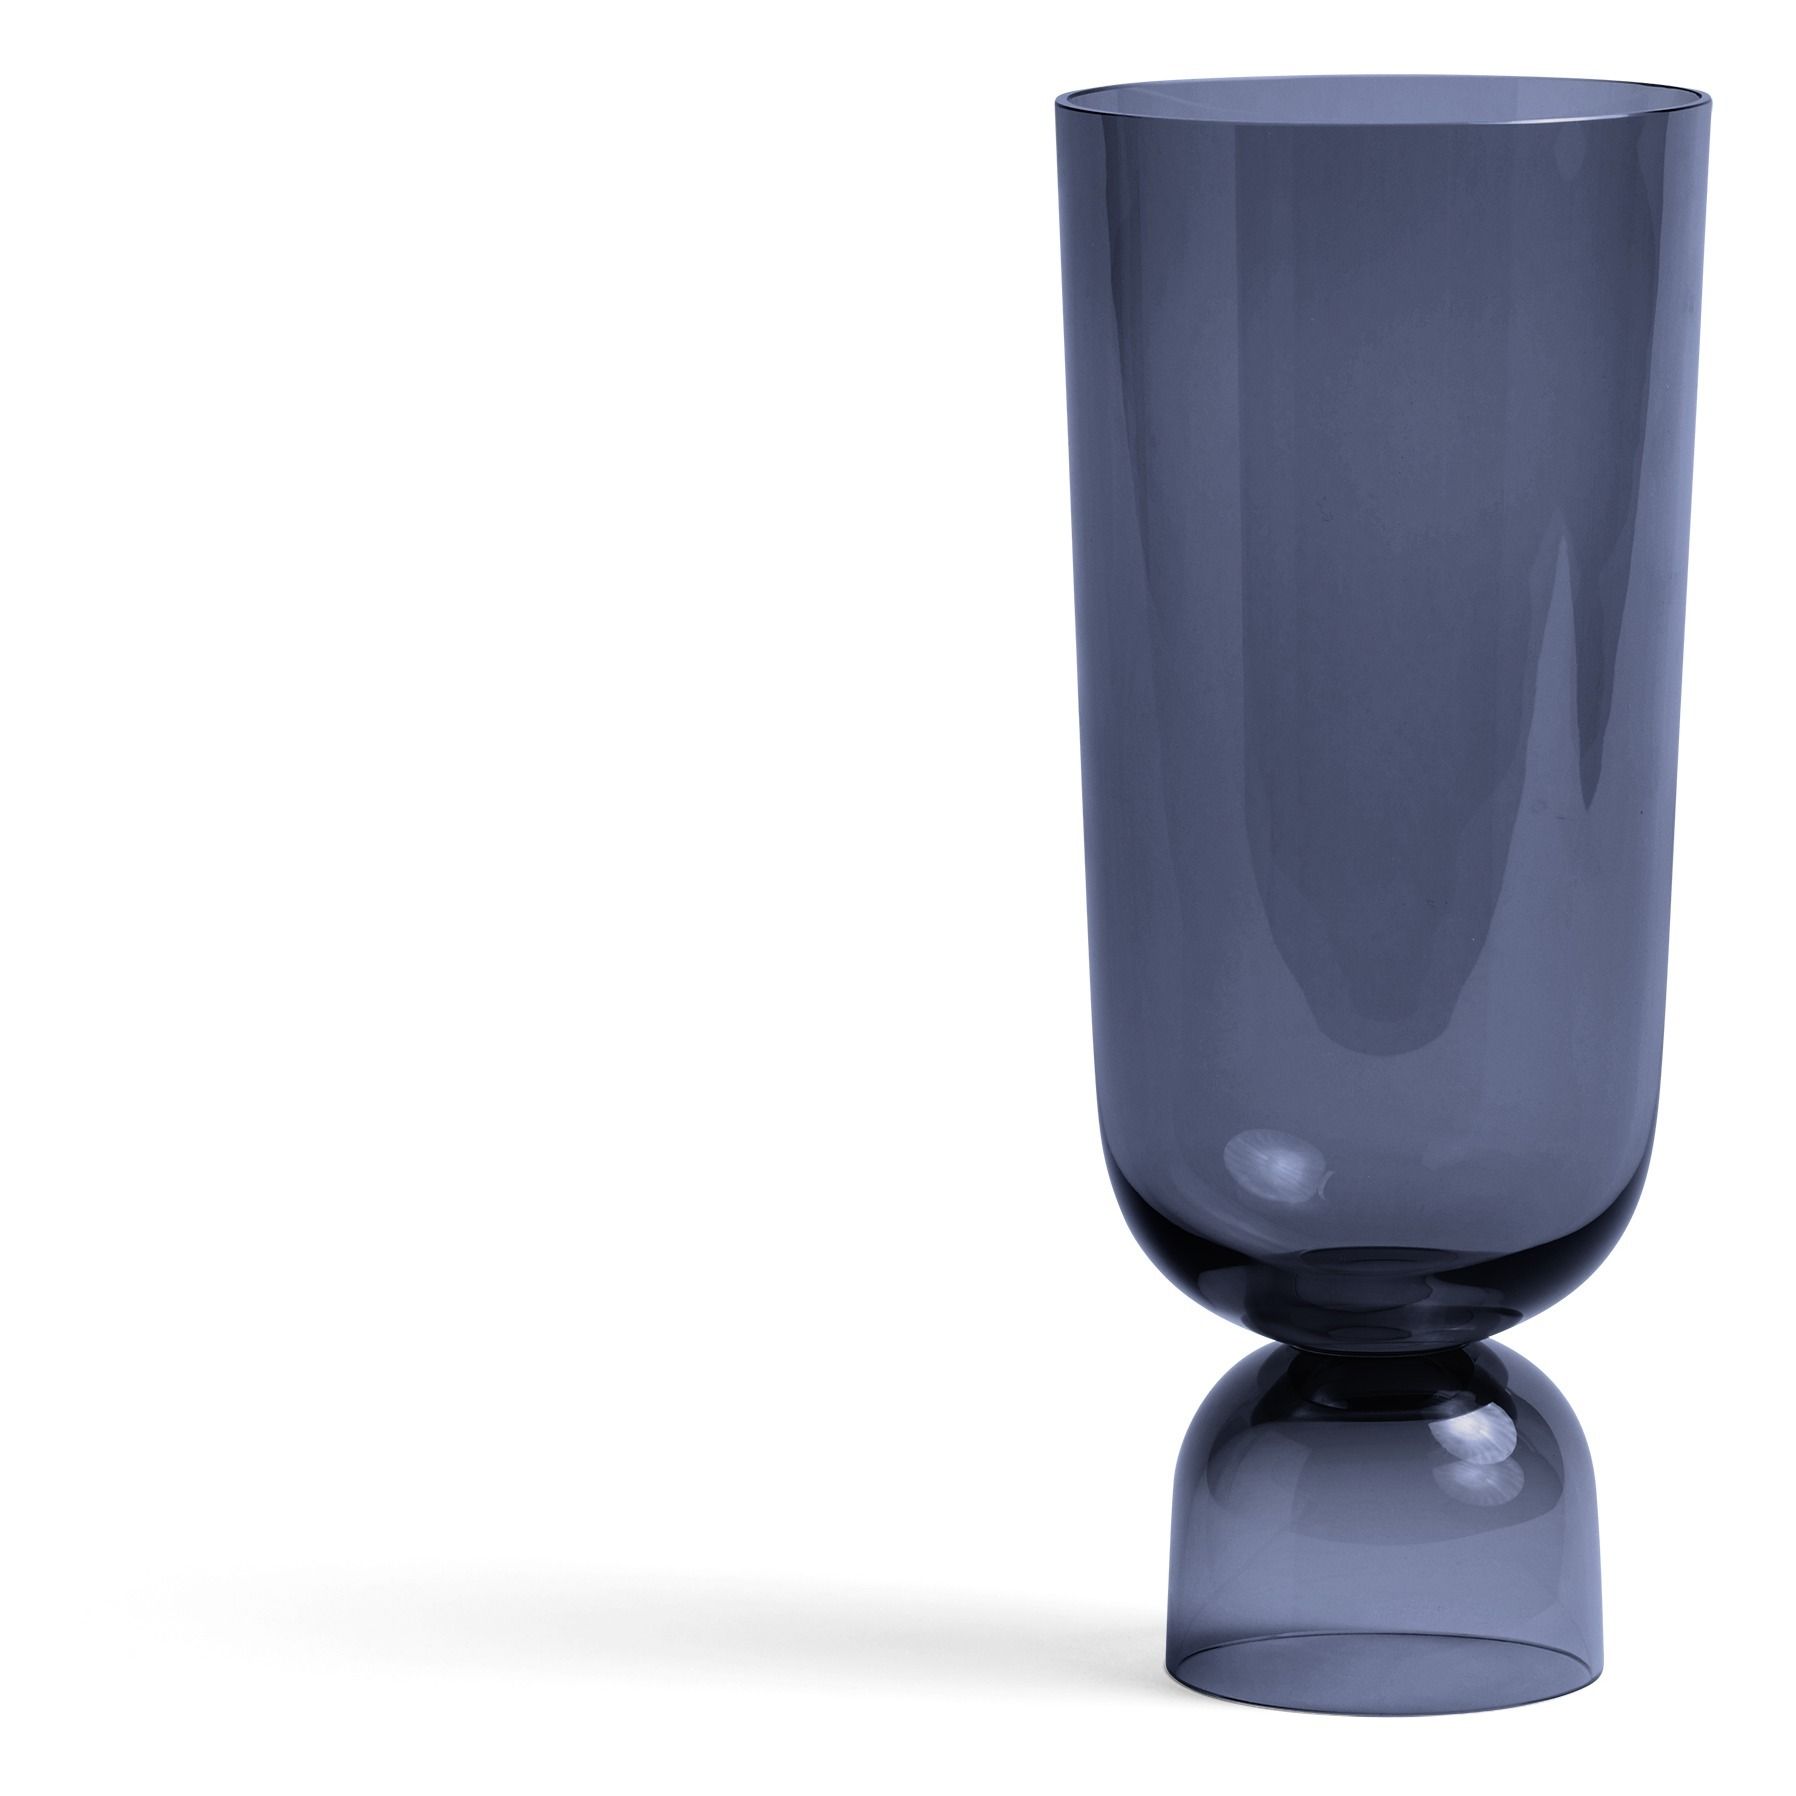 Hay - Vase Bottoms Up en verre - Bleu marine